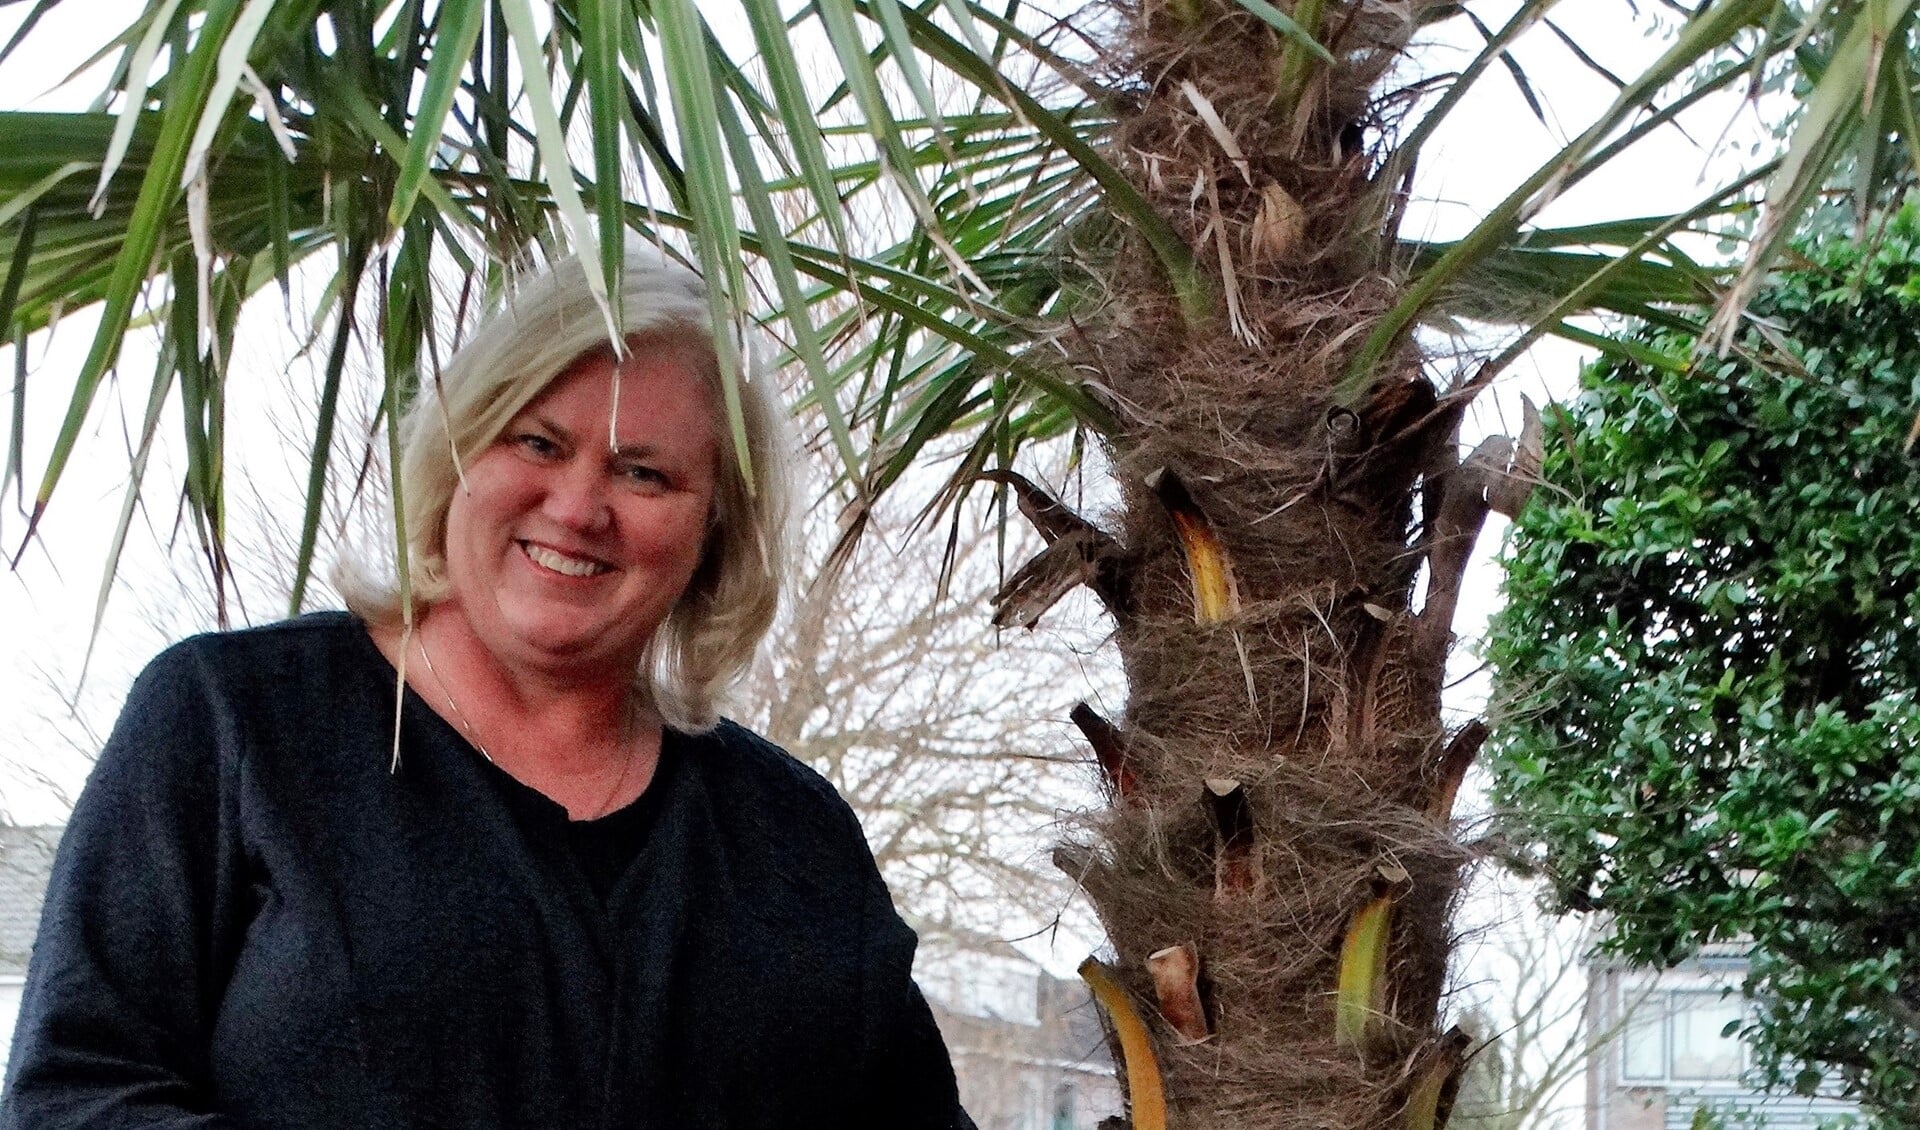 De palmboom in Bettine's tuin houdt de herinneringen aan verre oorden levend.